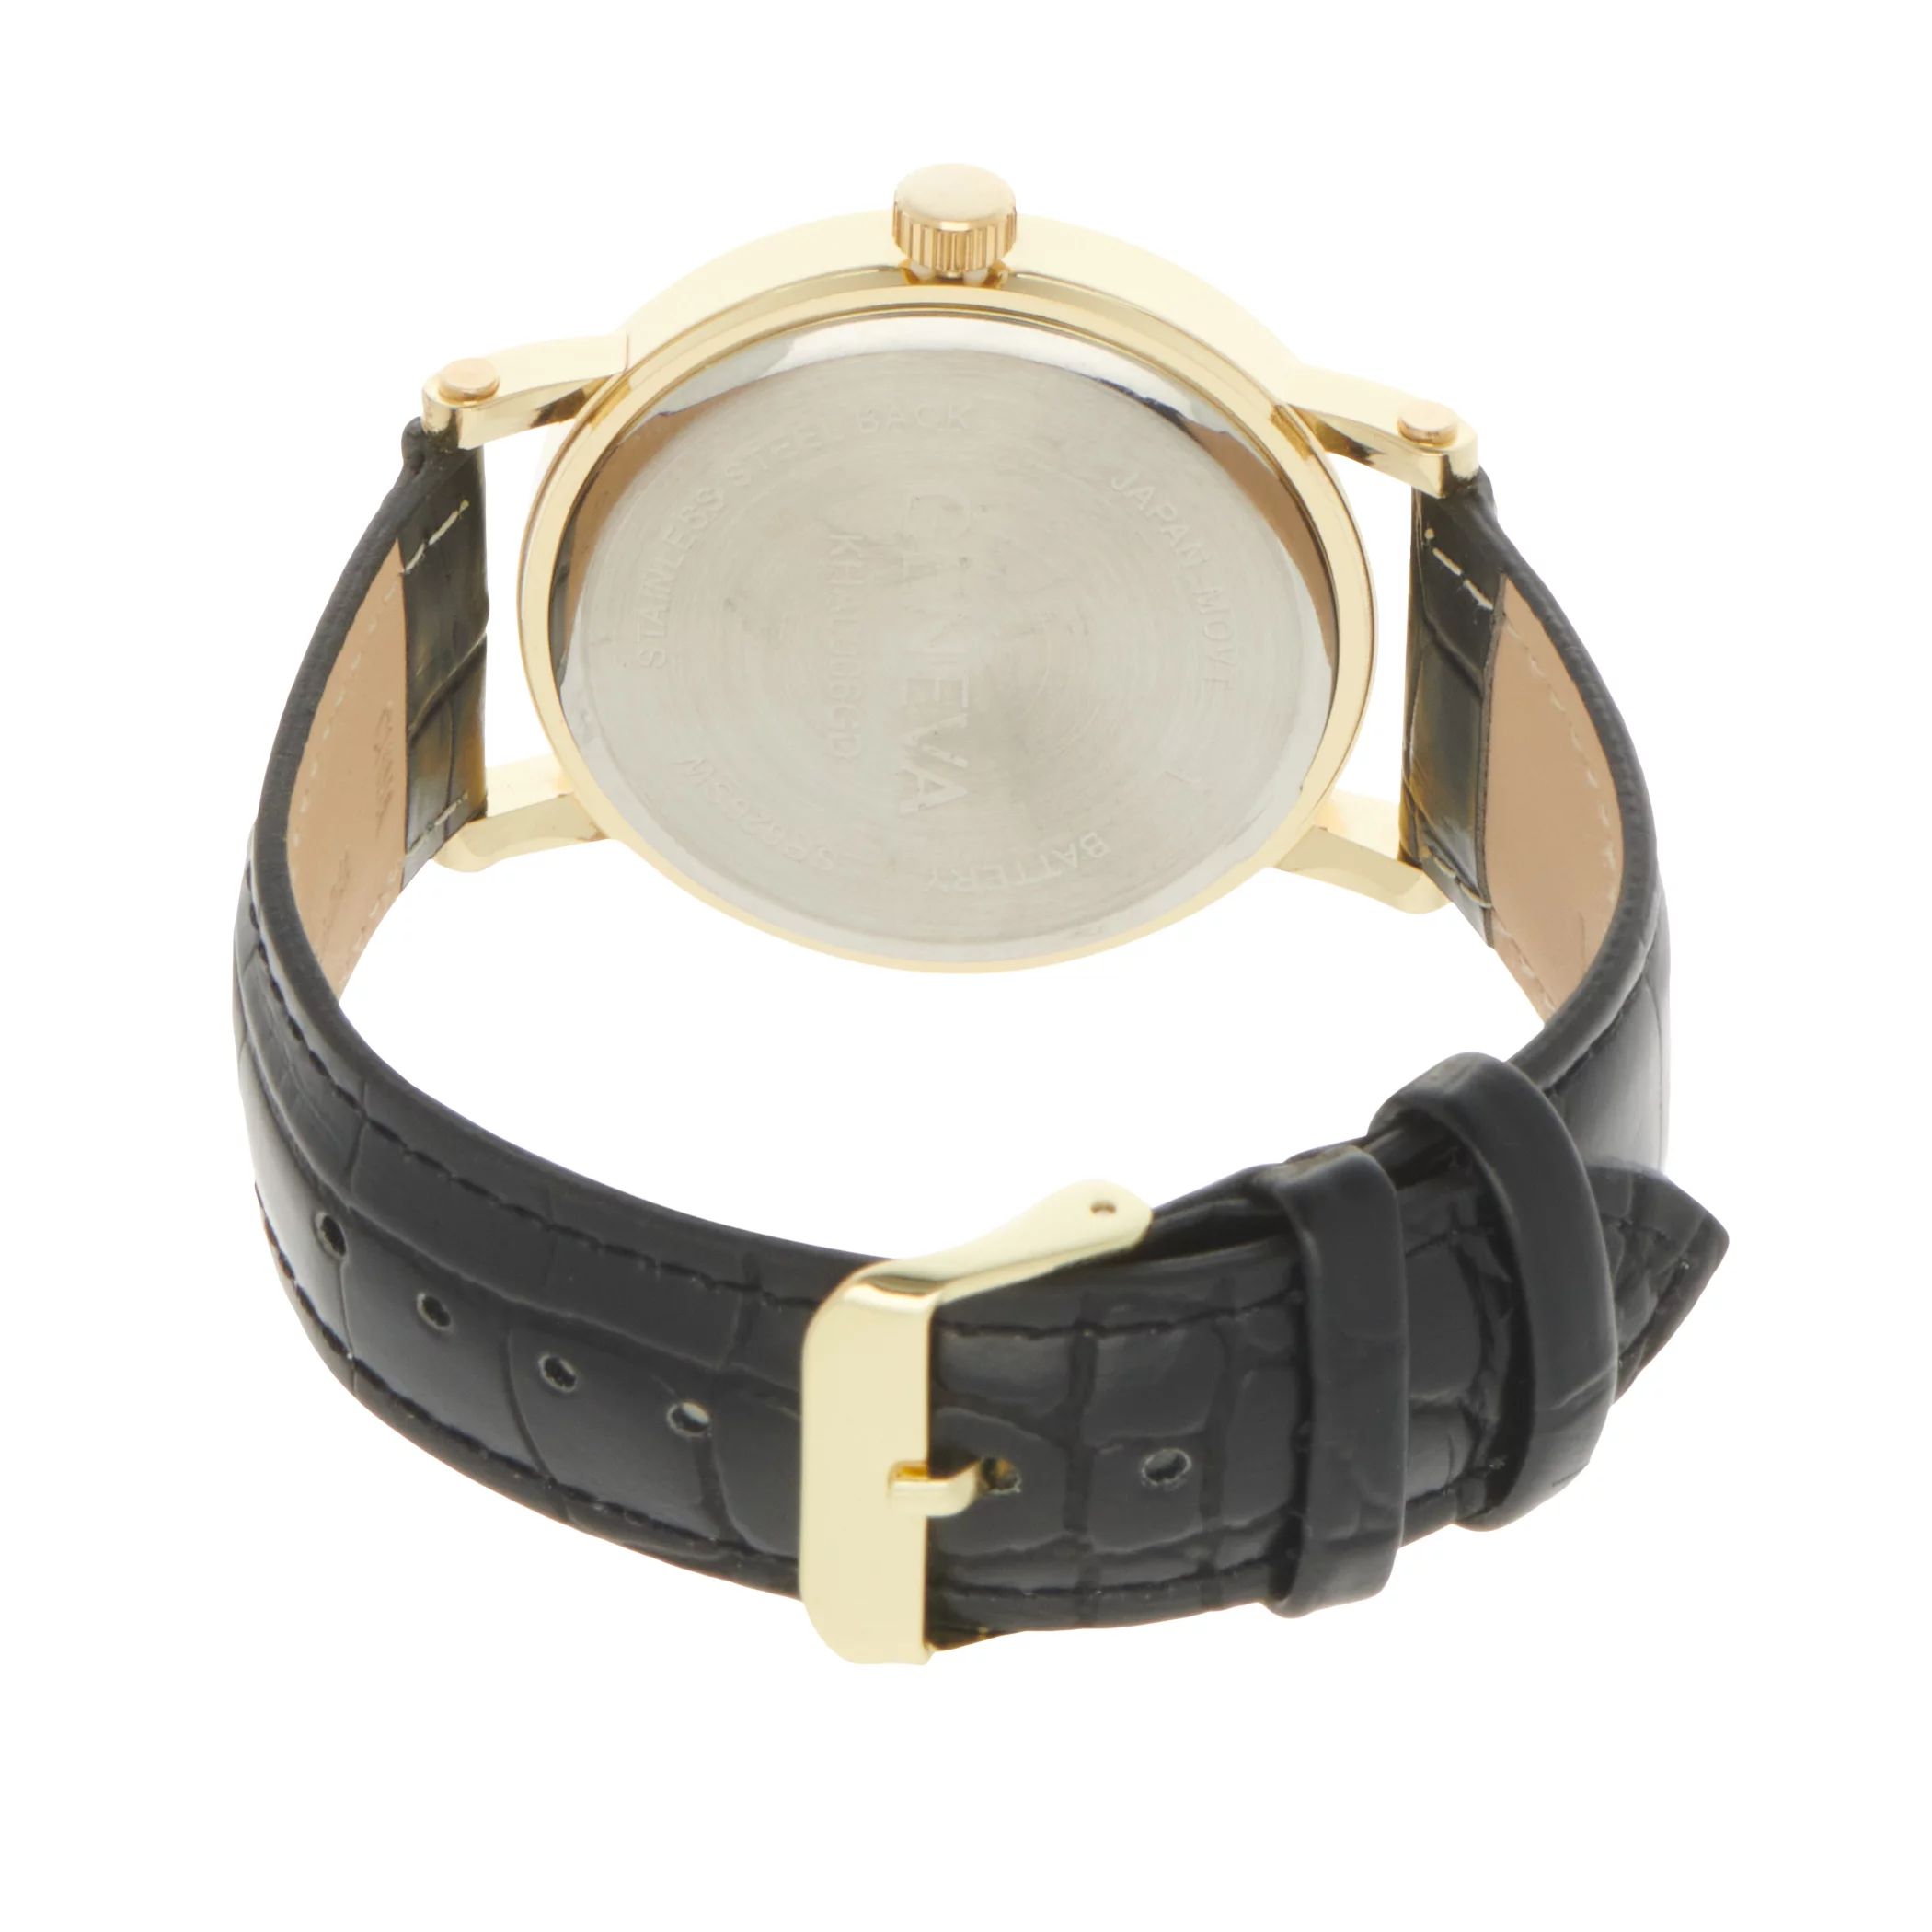 Мужские часы с золотистым ремешком Diamond Accent - KHA0006GD Geneva цена и фото